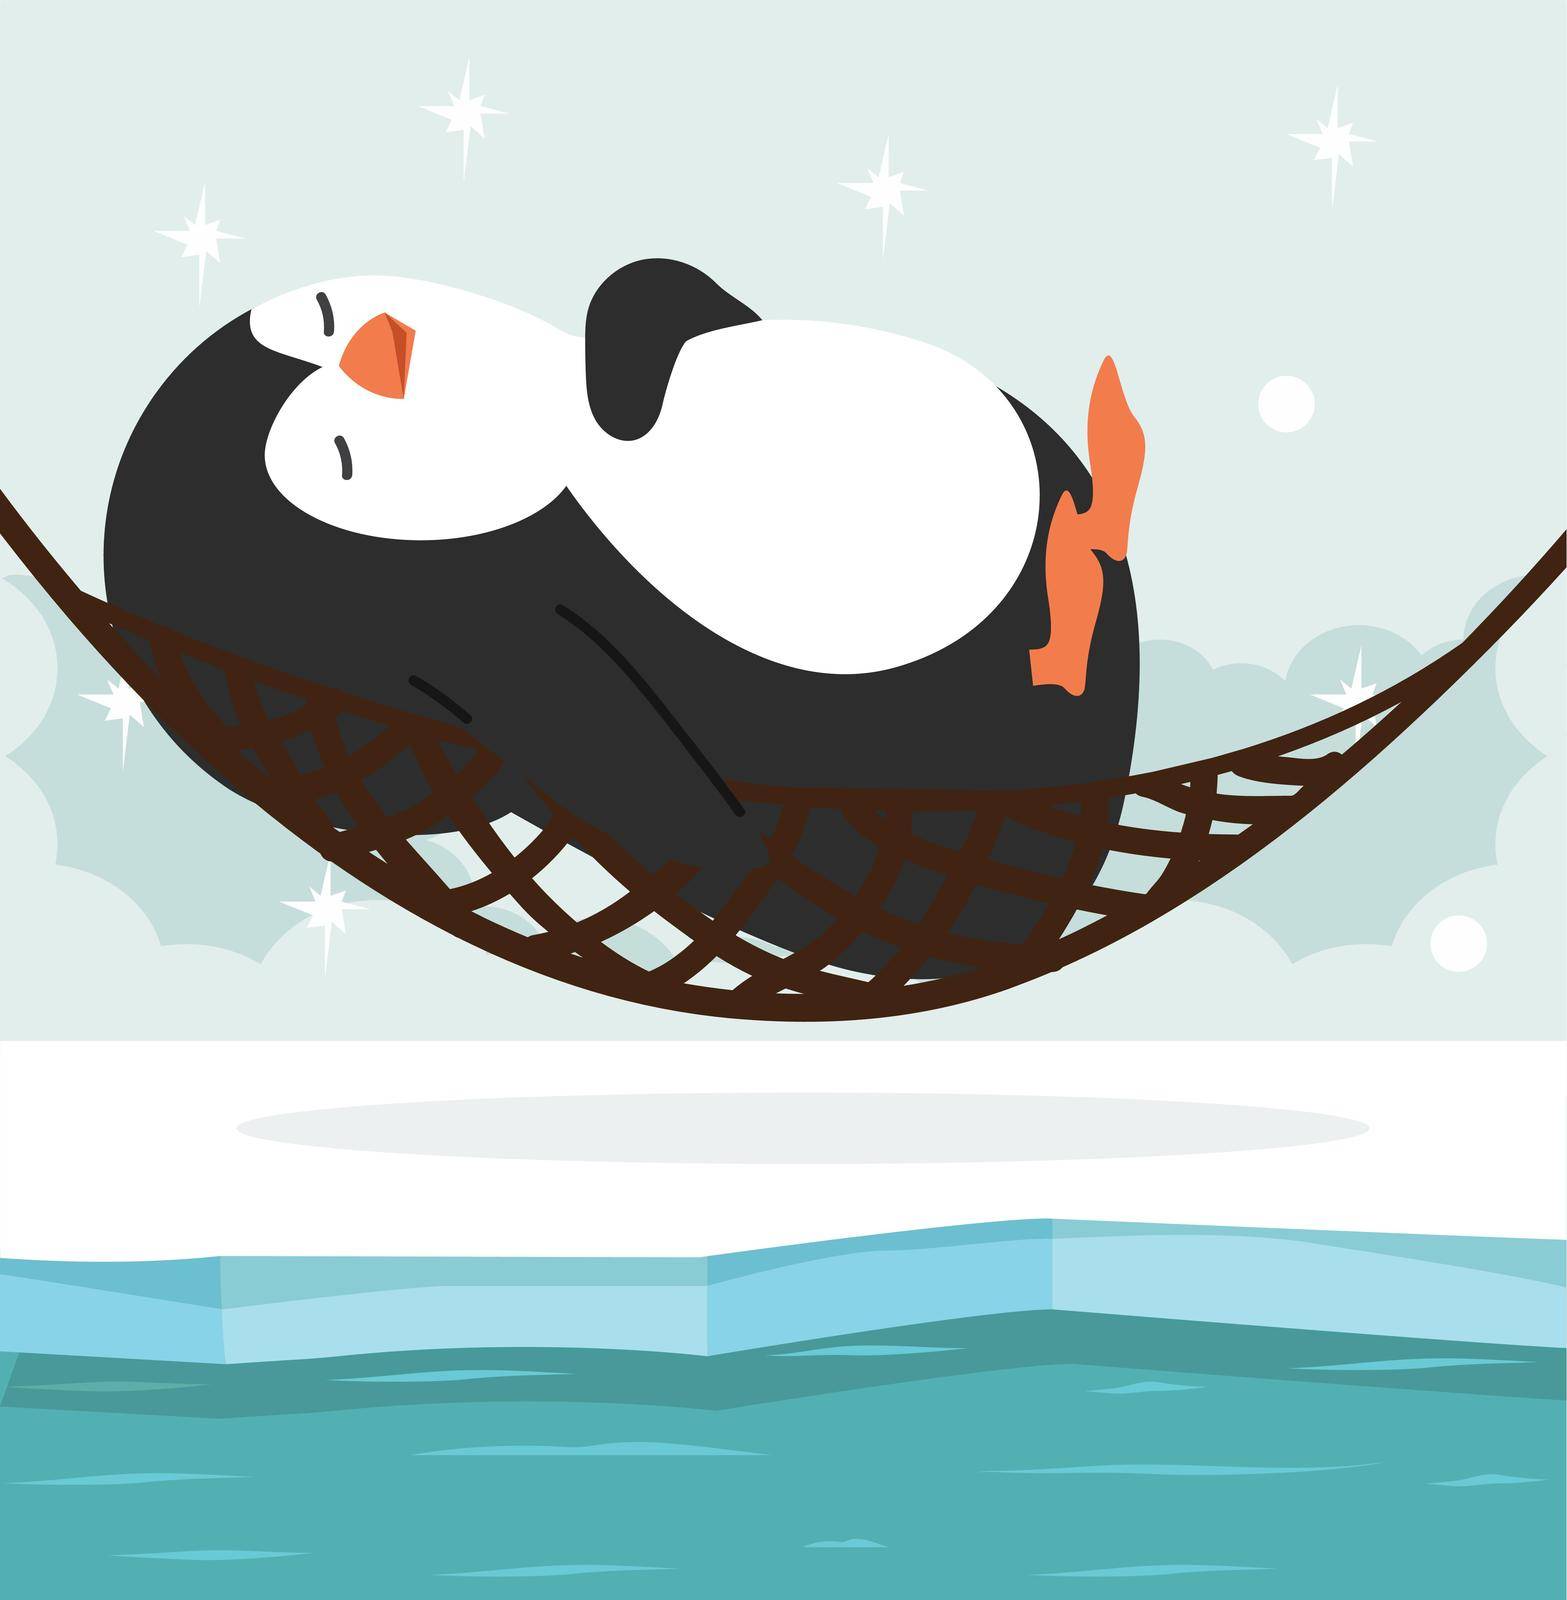 penguin sleep with hammock in North pole Arctic cartoon